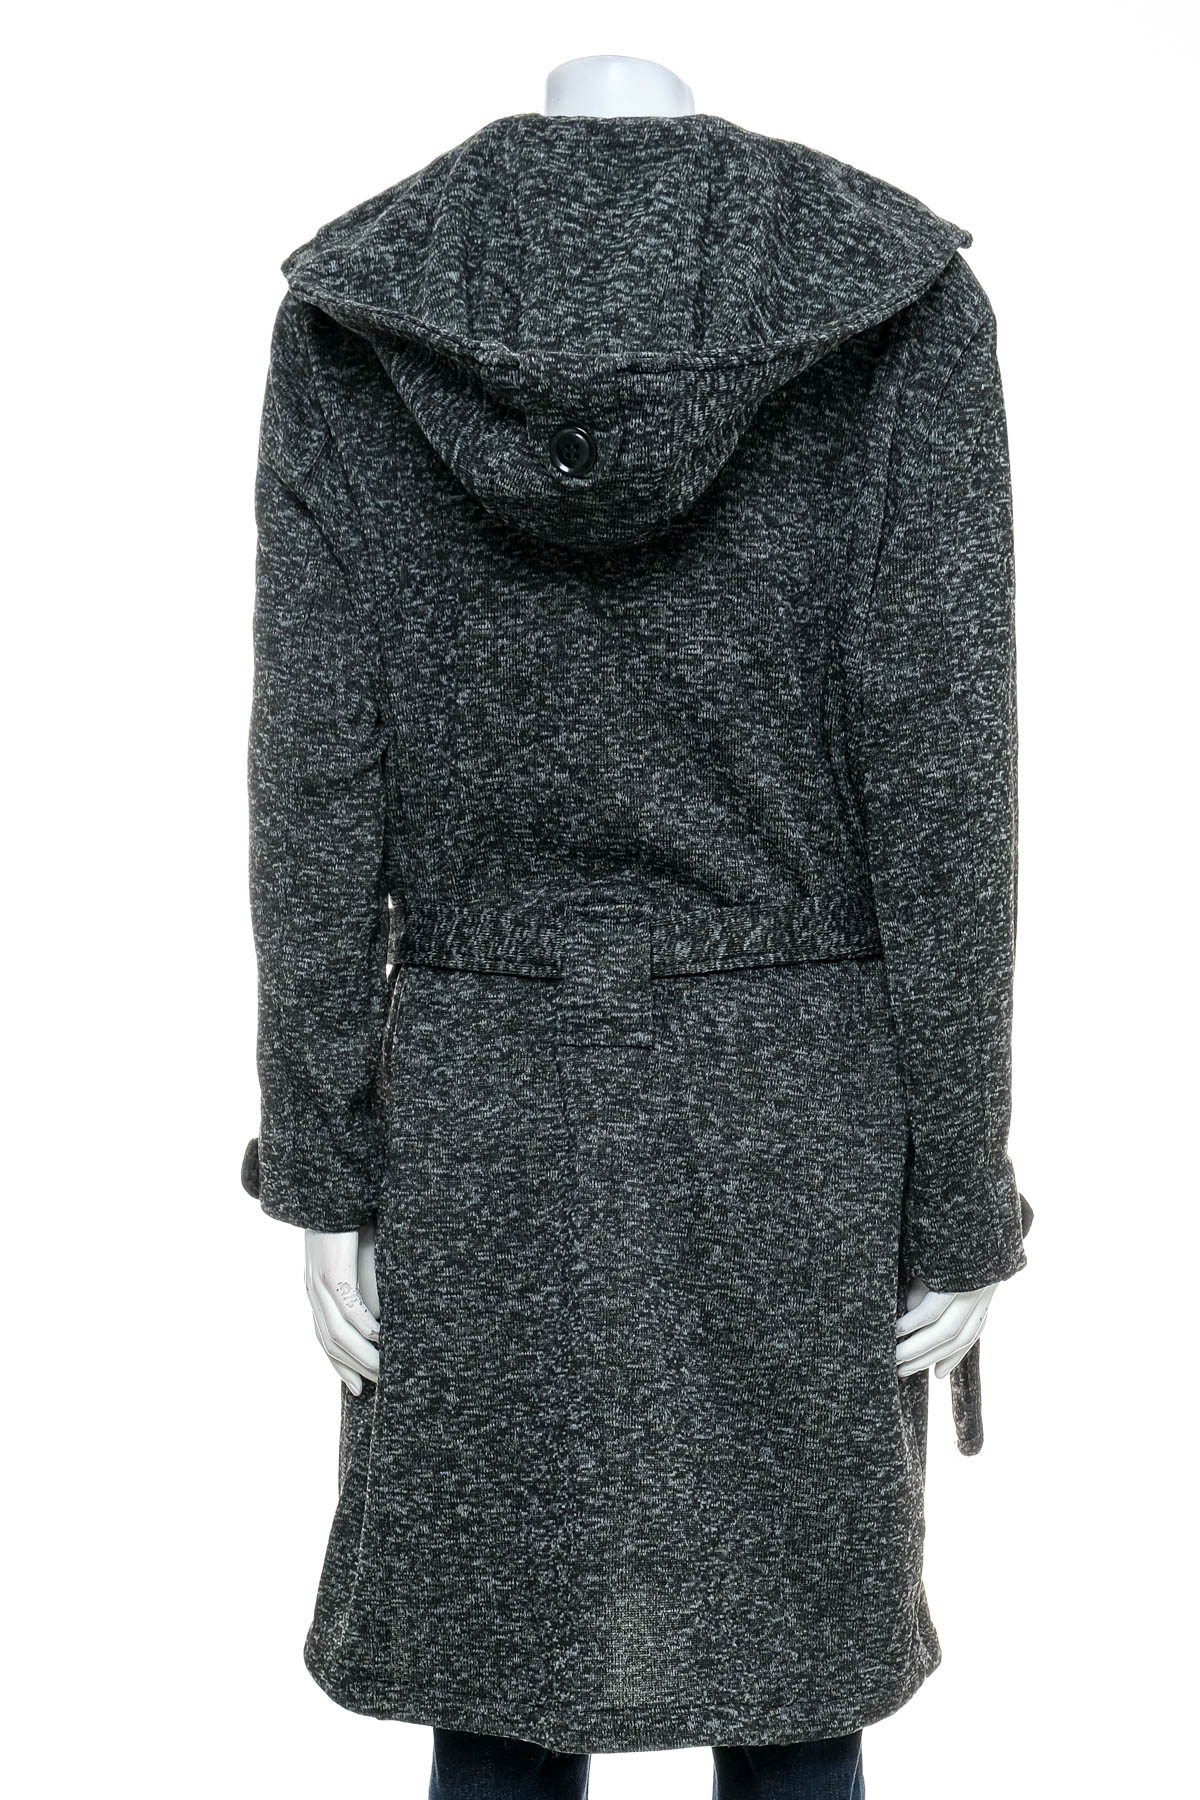 Women's coat - YoKi - 1